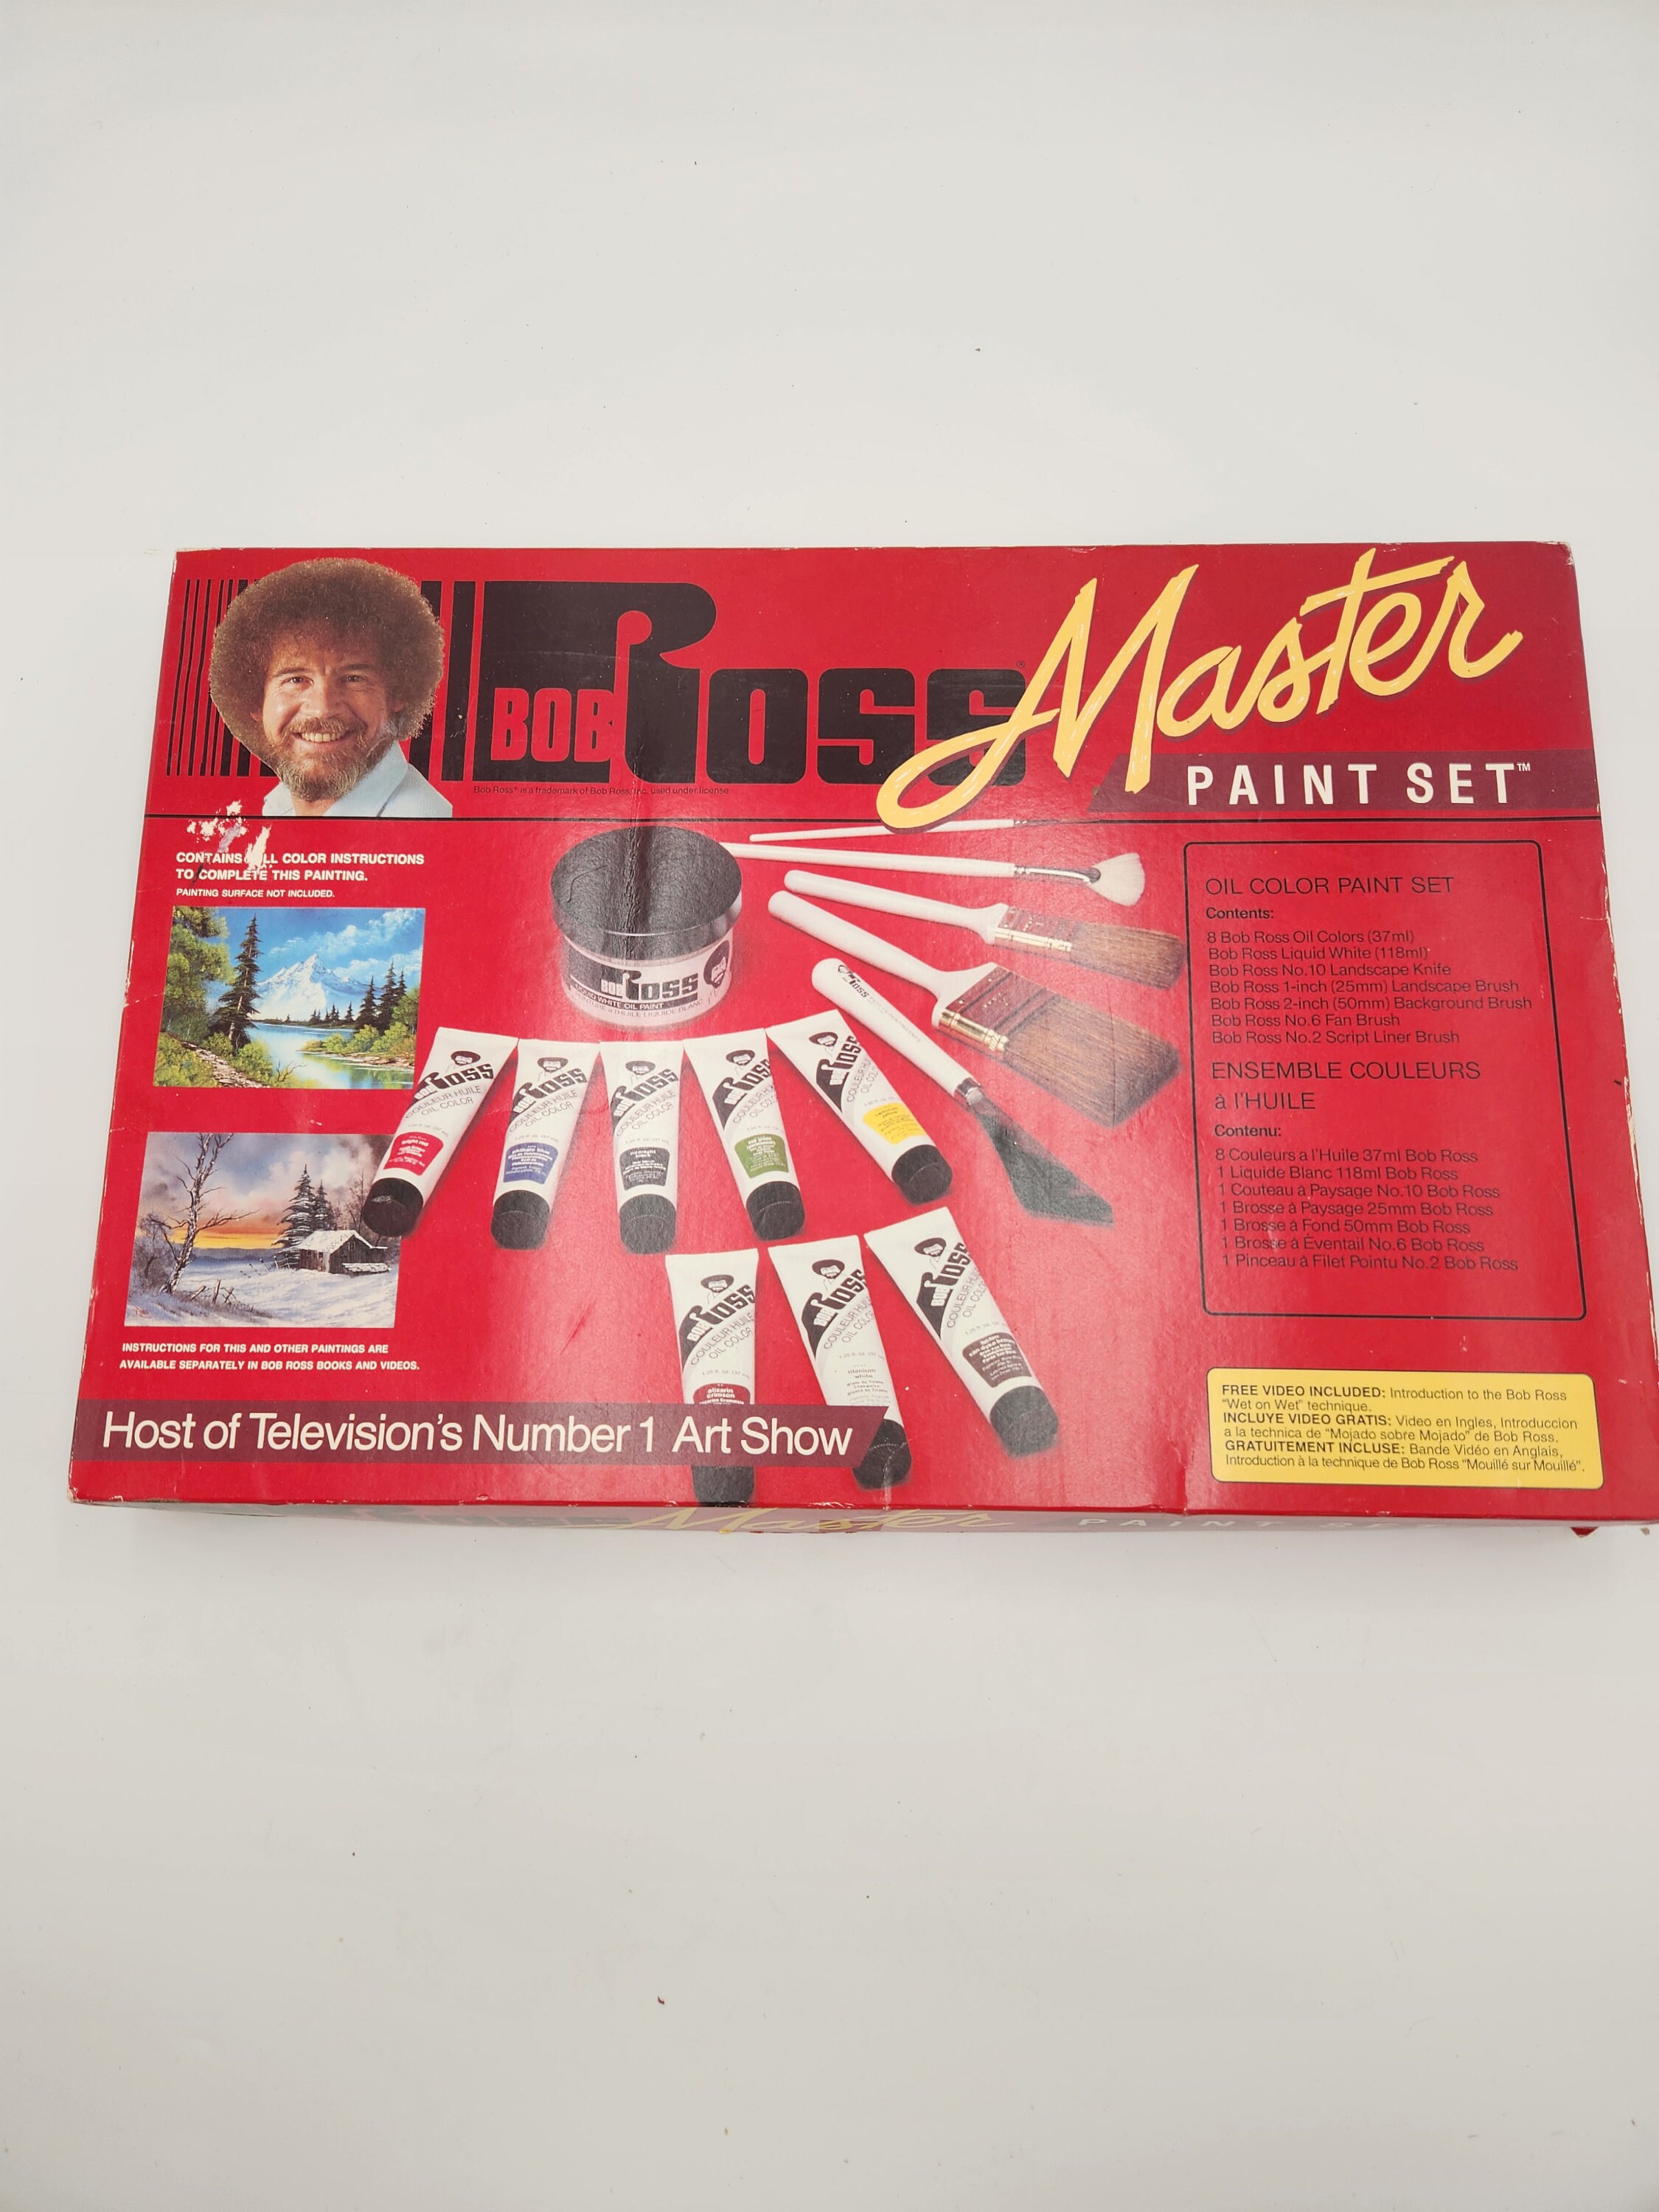  Bob Ross Painting Kit